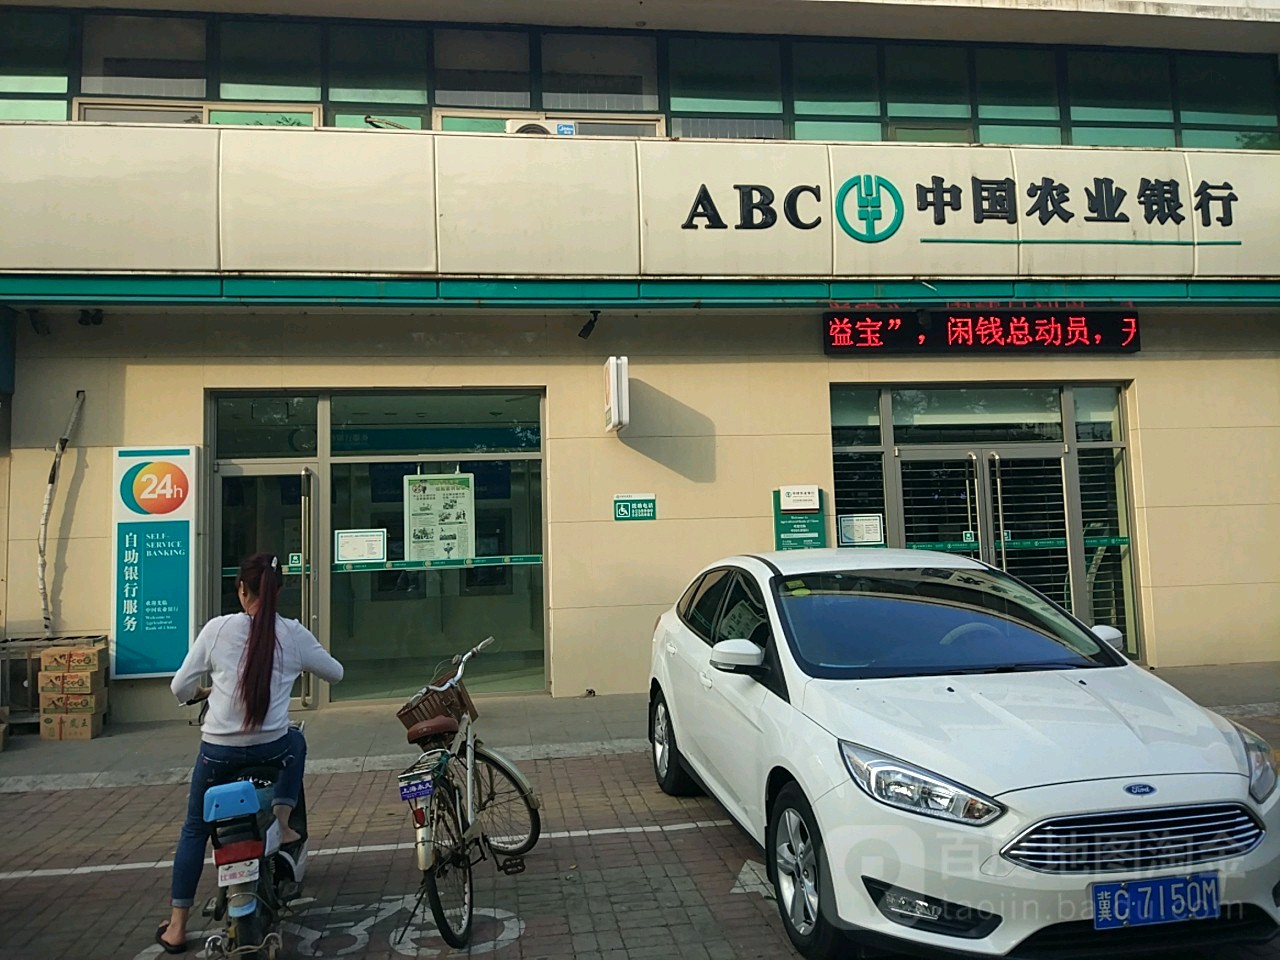 中國農業銀行24小時自助銀行(南海西路店)